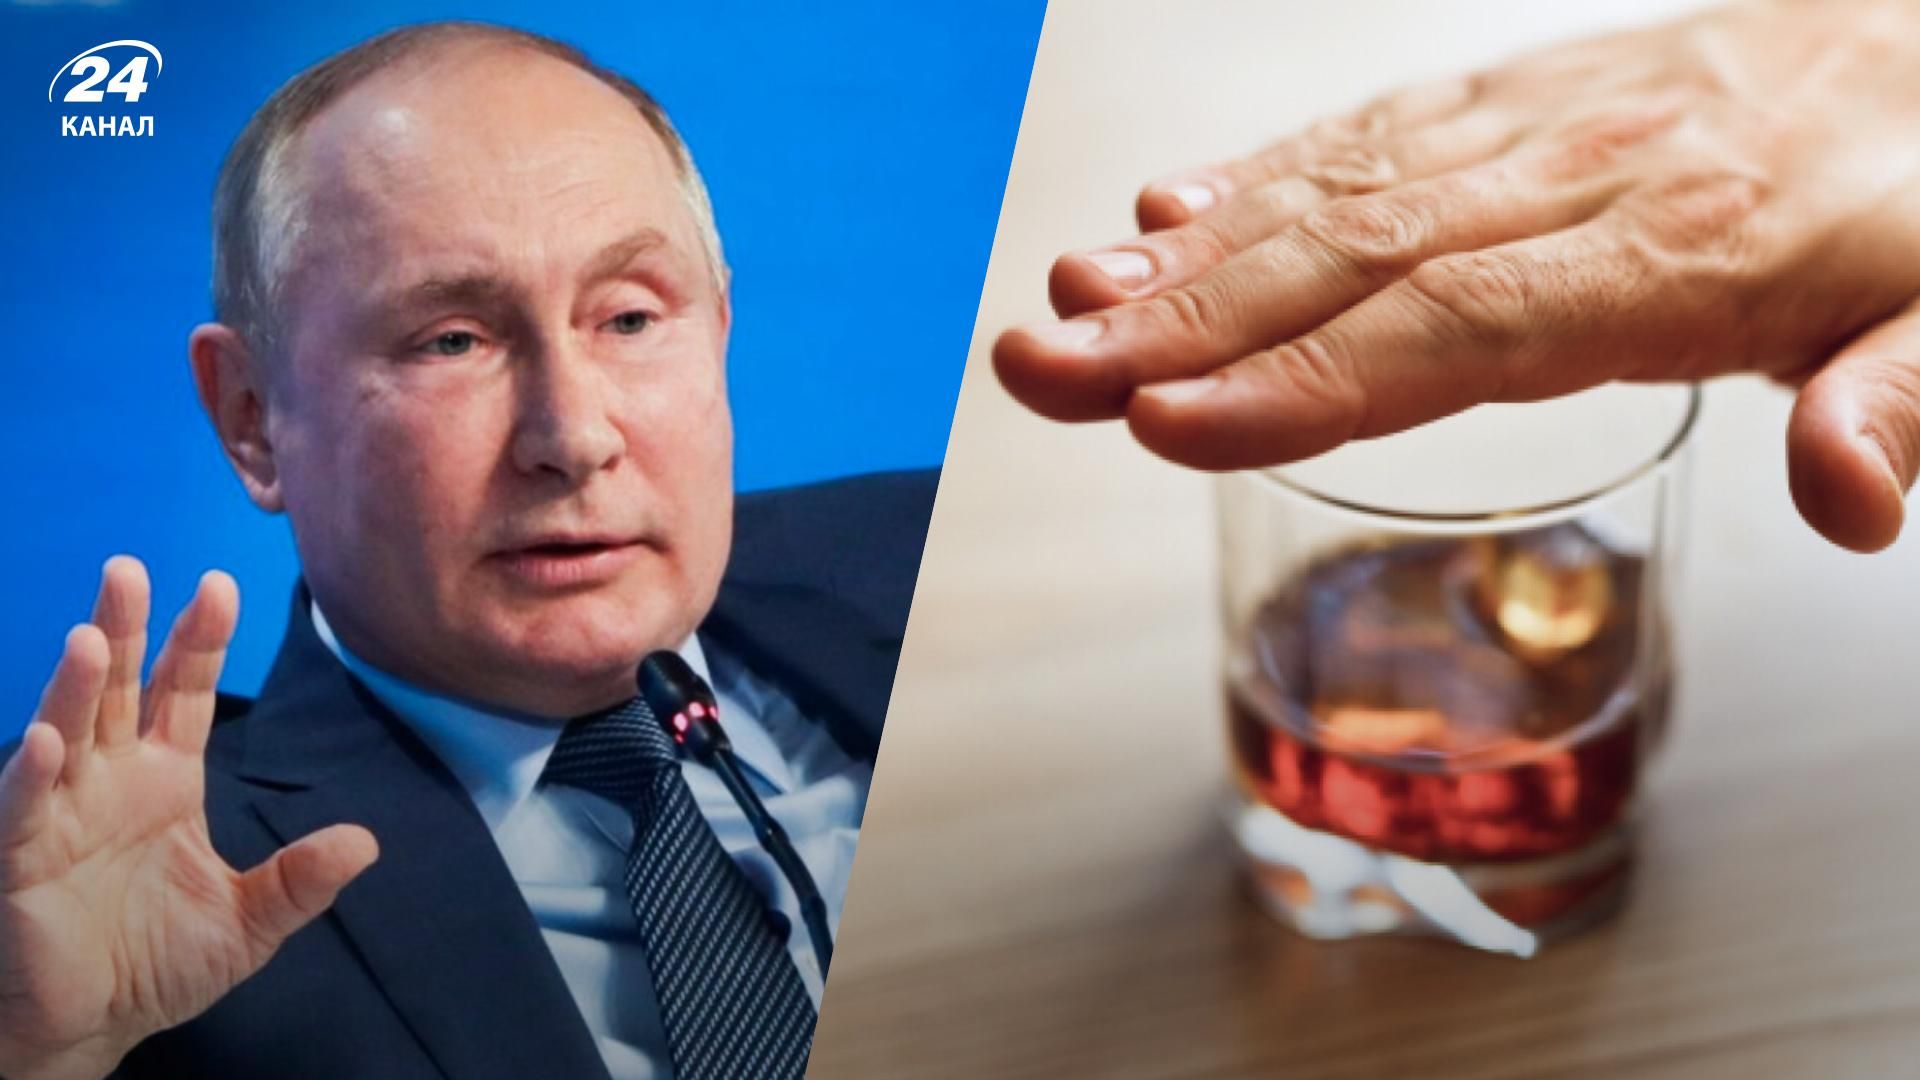 Путин стал пациентом клиники лечения алкоголизма - российский сайт взломали хакеры